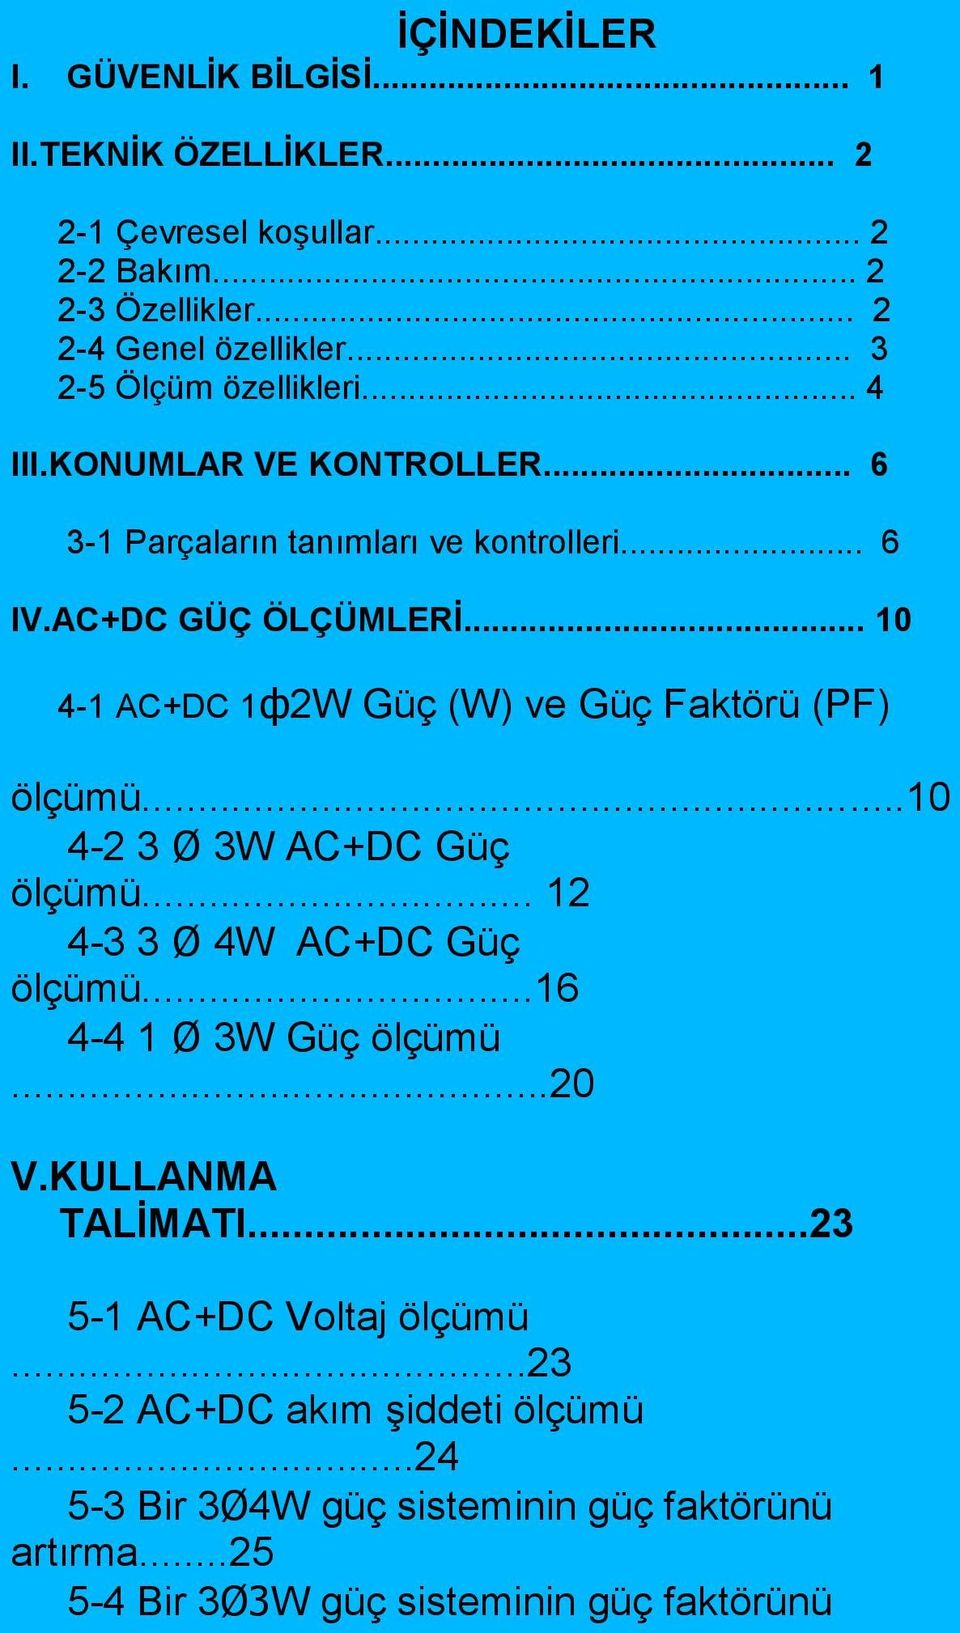 .. 10 4-1 AC+DC 1ф2W Güç (W) ve Güç Faktörü (PF) ölçümü...10 4-2 3 Ø 3W AC+DC Güç ölçümü... 12 4-3 3 Ø 4W AC+DC Güç ölçümü...16 4-4 1 Ø 3W Güç ölçümü...20 V.